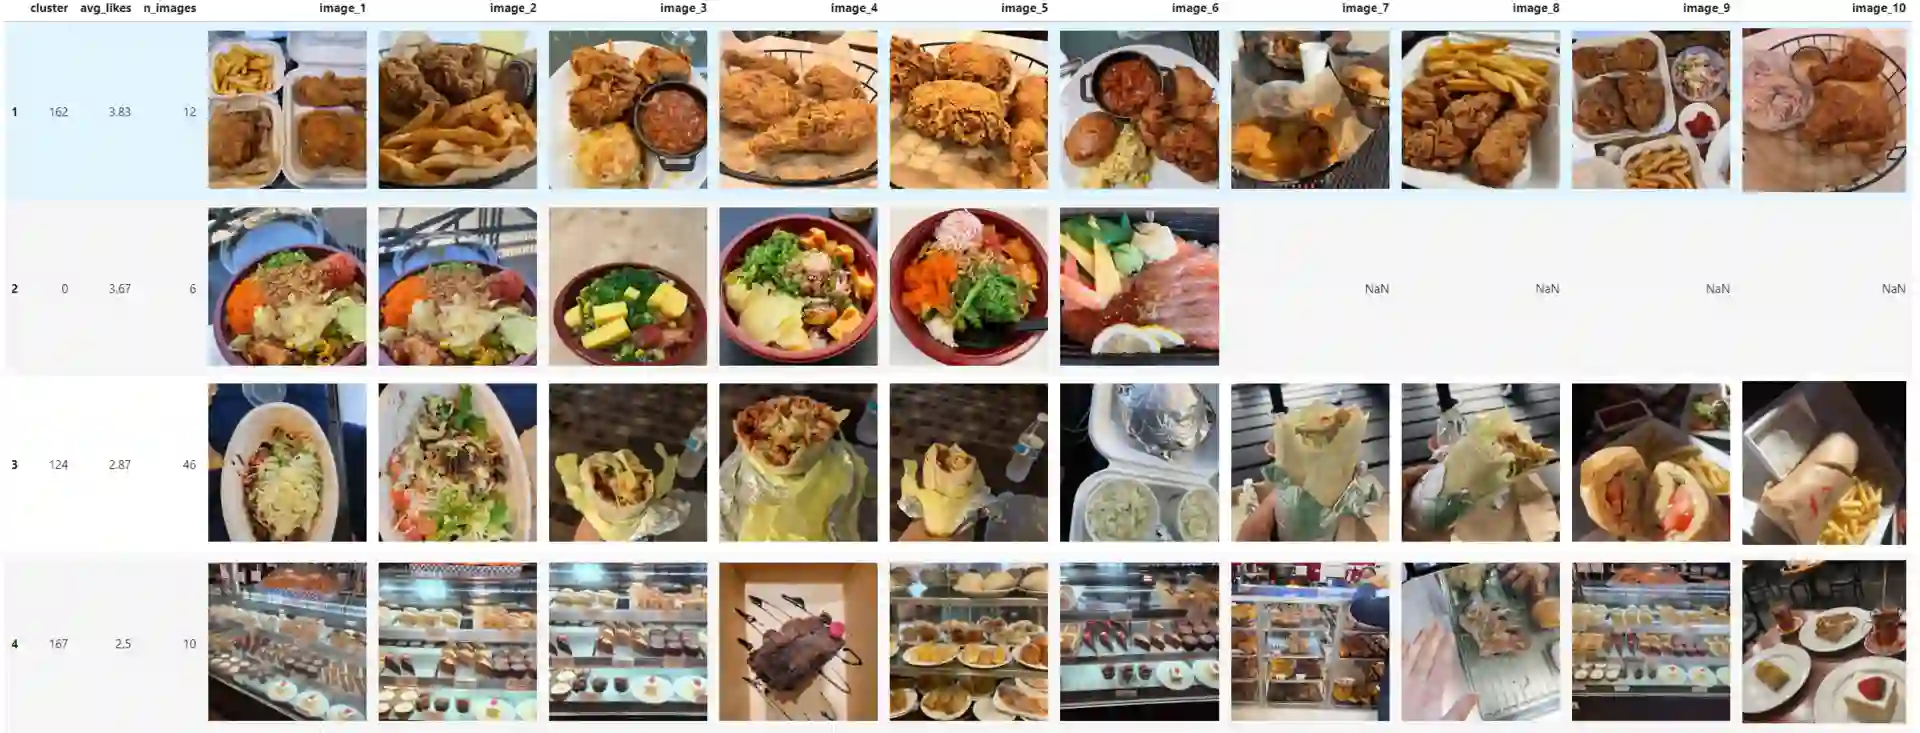 restaurant image global clustering